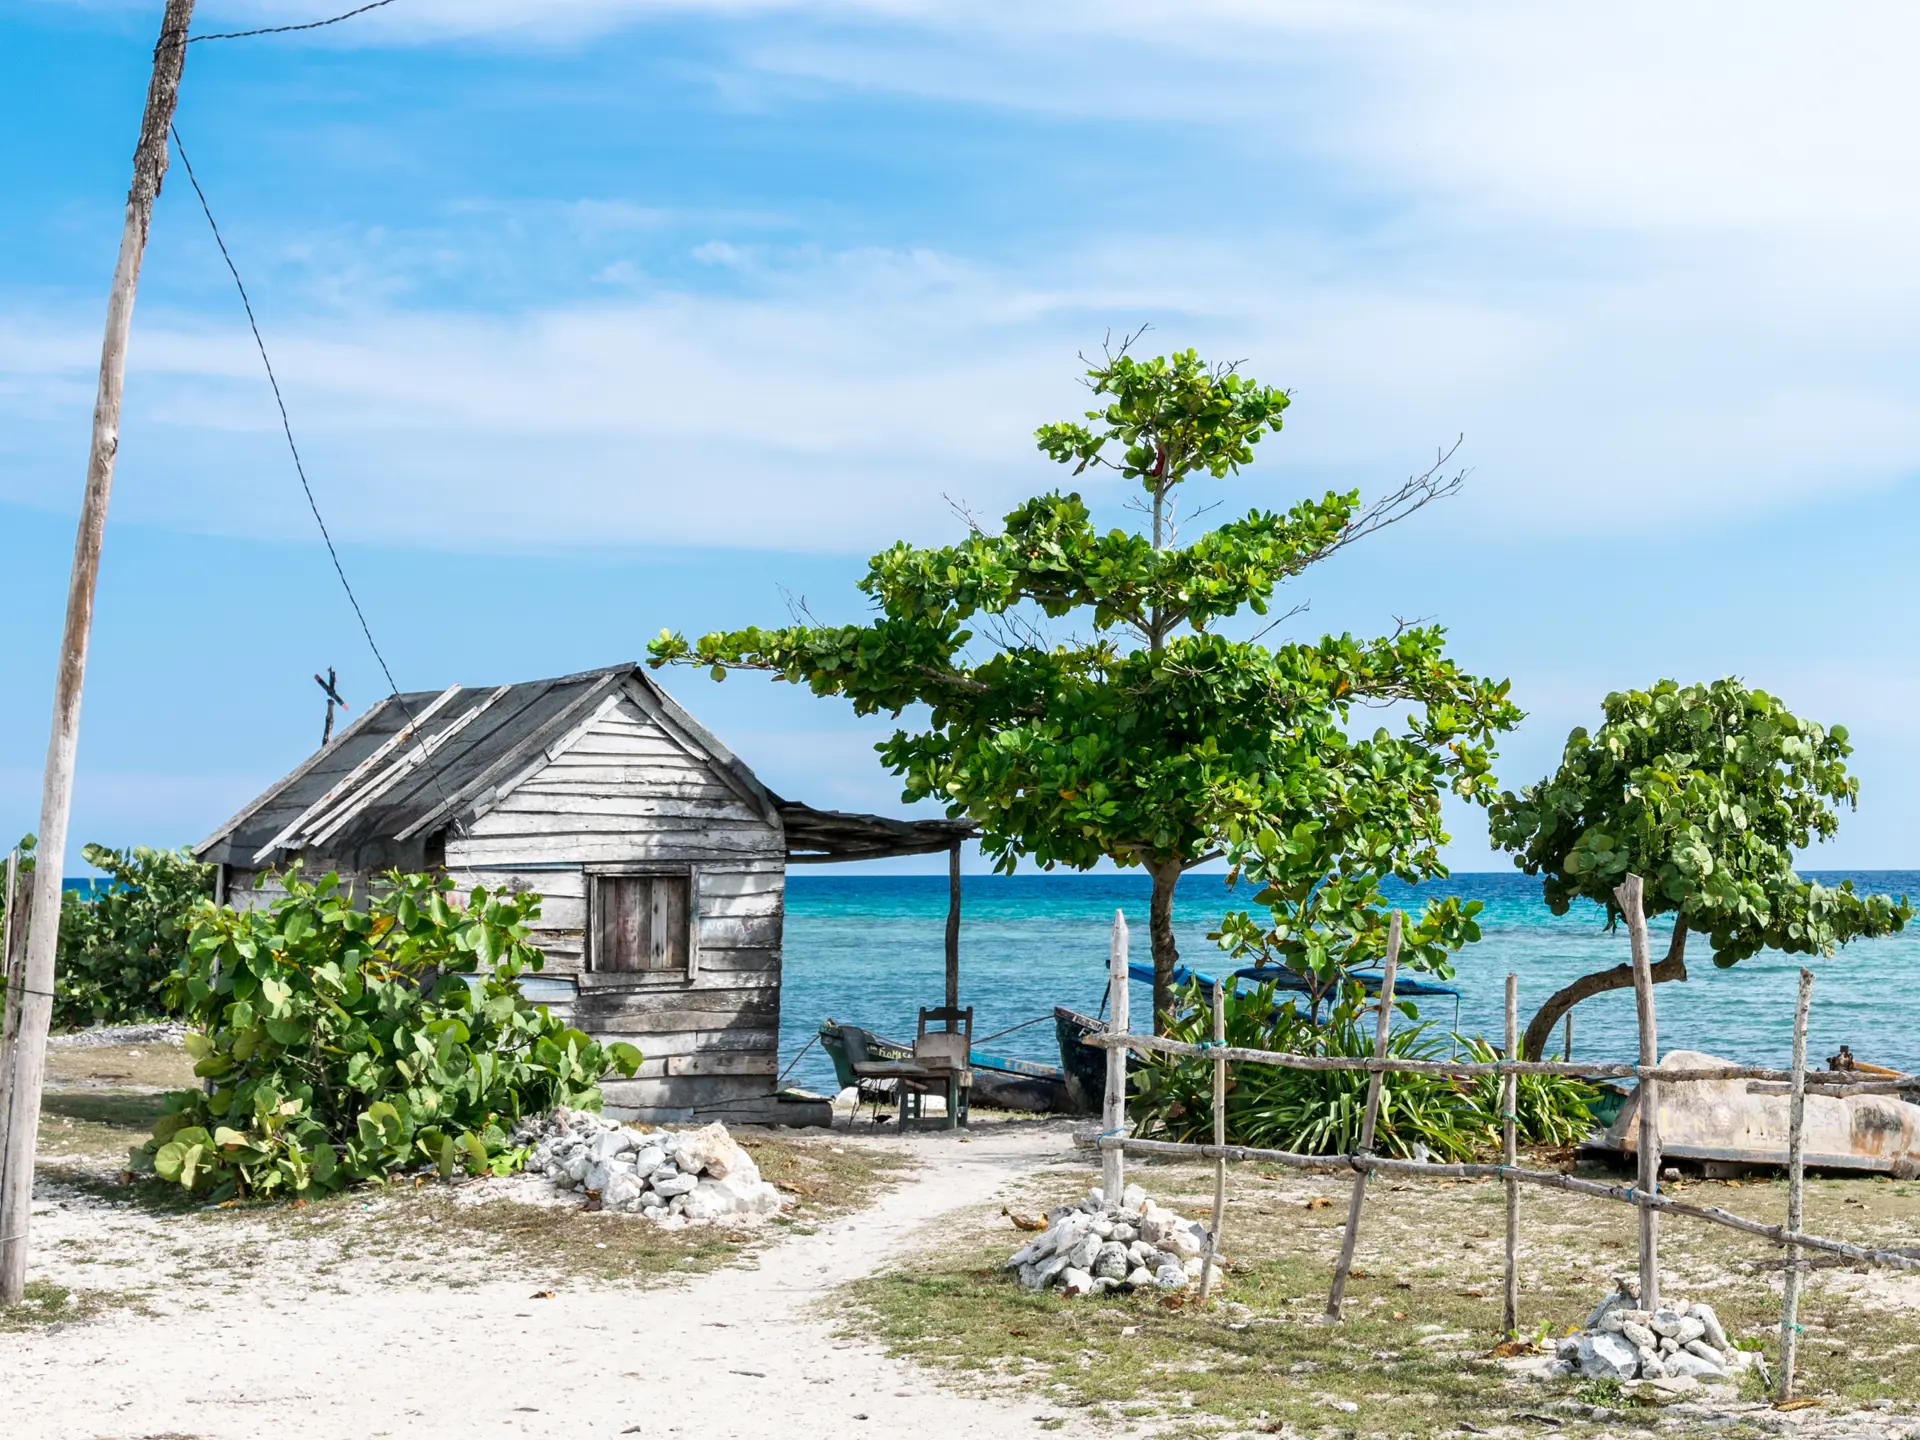 shutterstock_353817056 Fisherman's cottage by the sea in Playa de Giron, Cuba..jpg